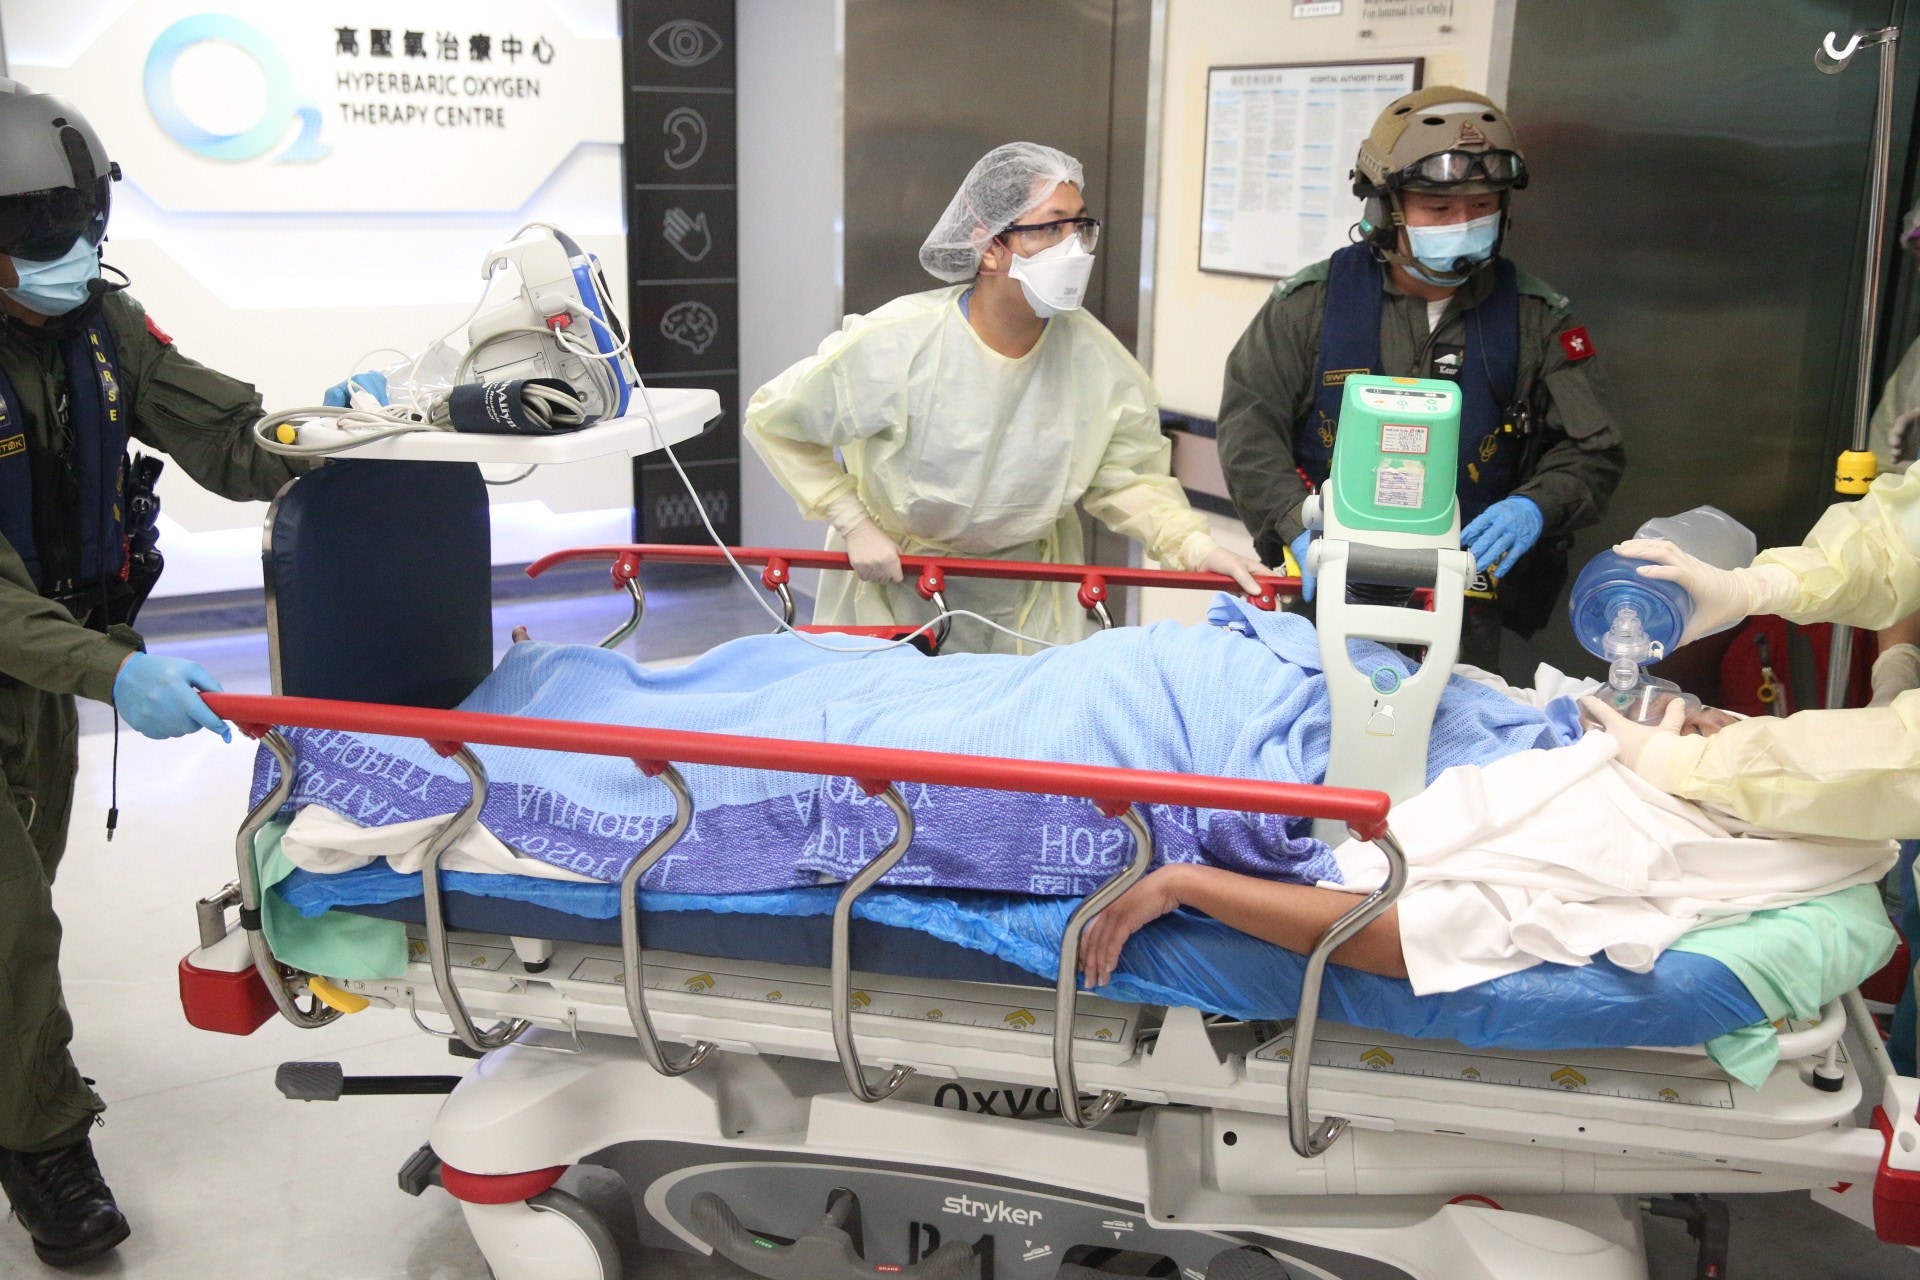 37歲女清水灣遊艇上昏迷由直升機救起送院不治 香港01 突發